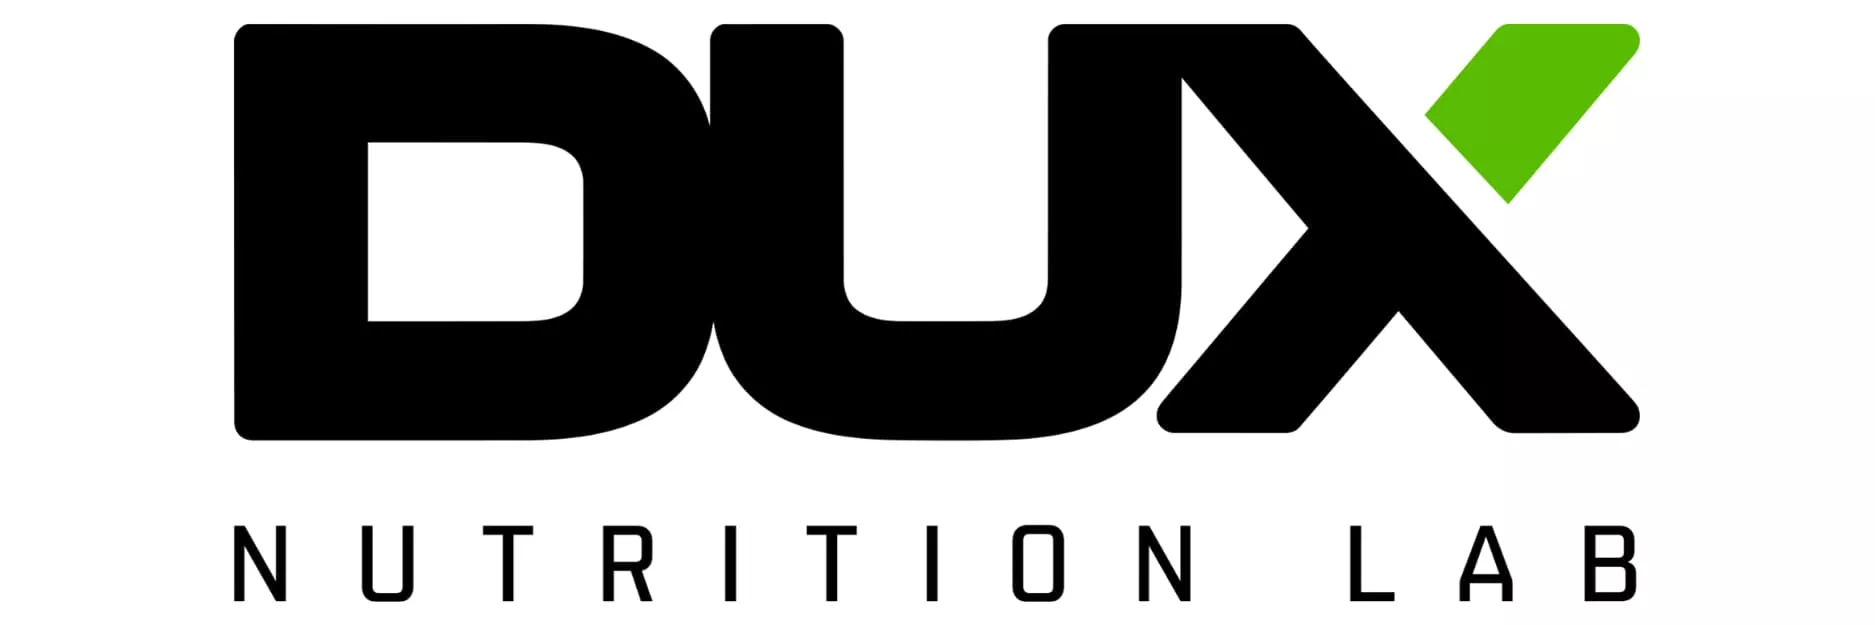 DUX NUTRITION